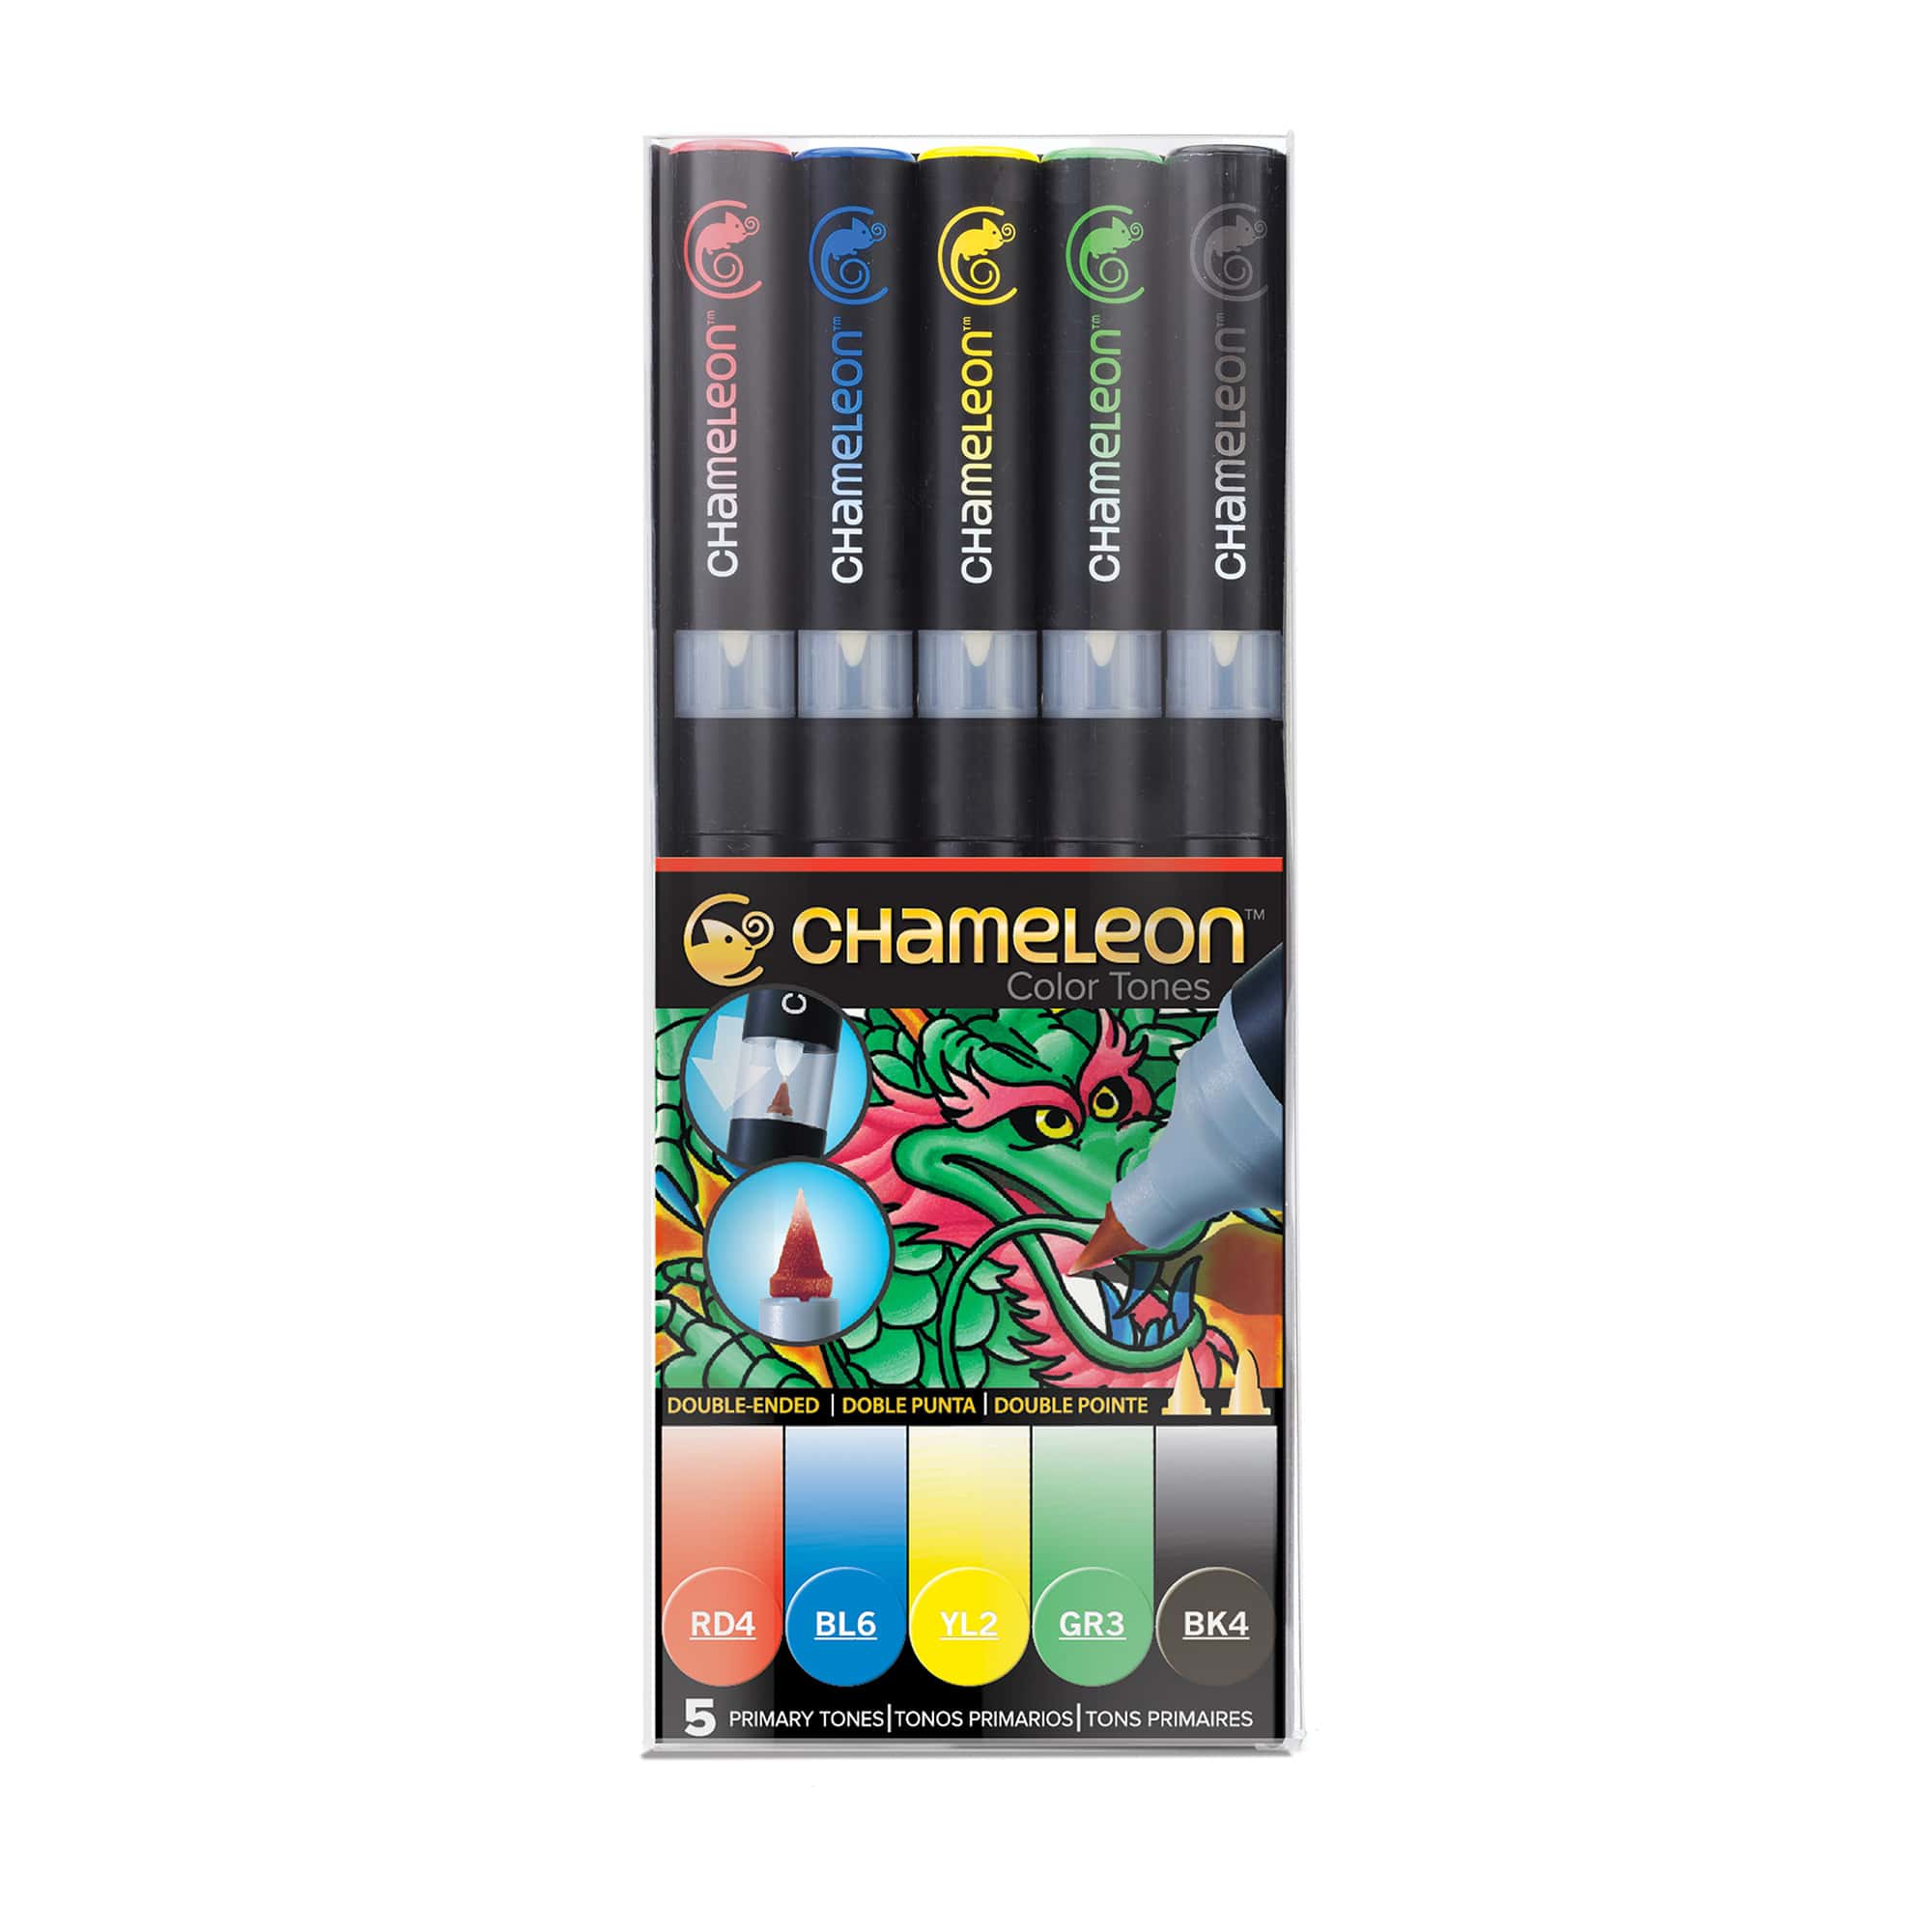 Chameleon Color Tones Super Complete Set Alcohol Markers Pens 52pc